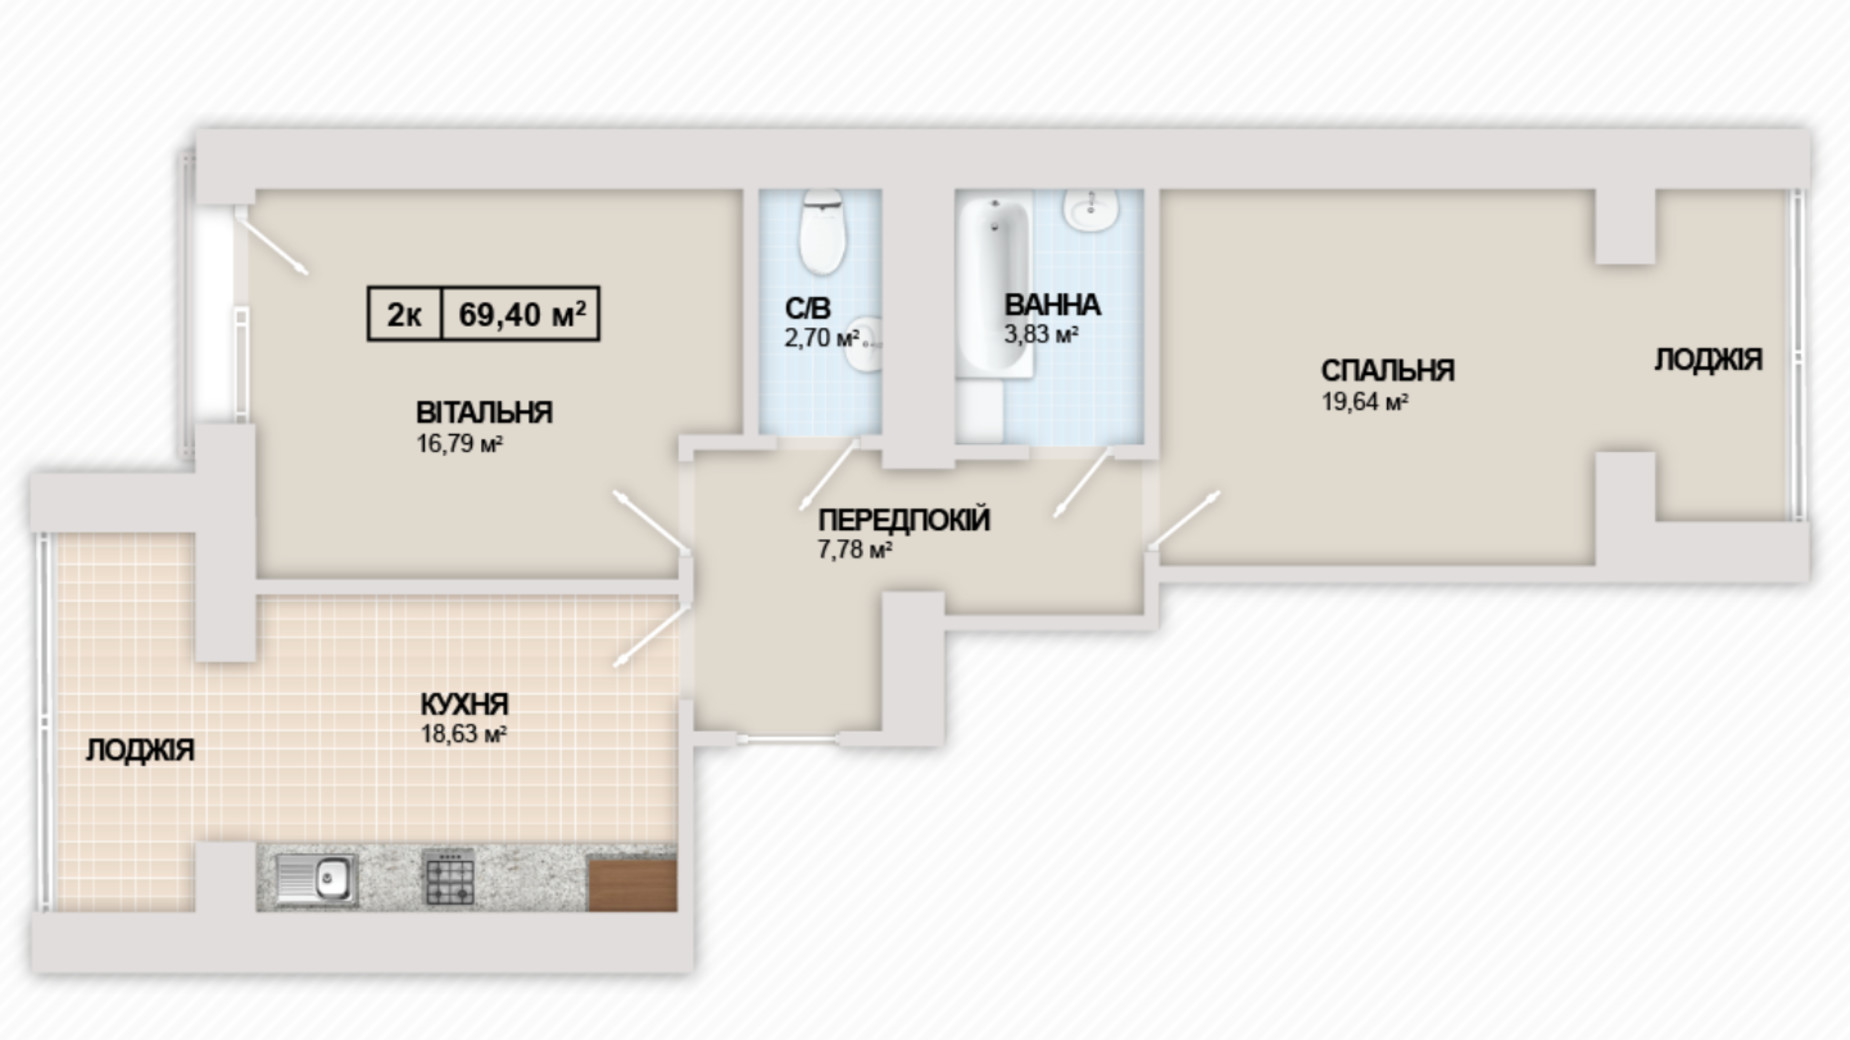 Планировка 2-комнатной квартиры в ЖК Містечко Козацьке 69.4 м², фото 453723